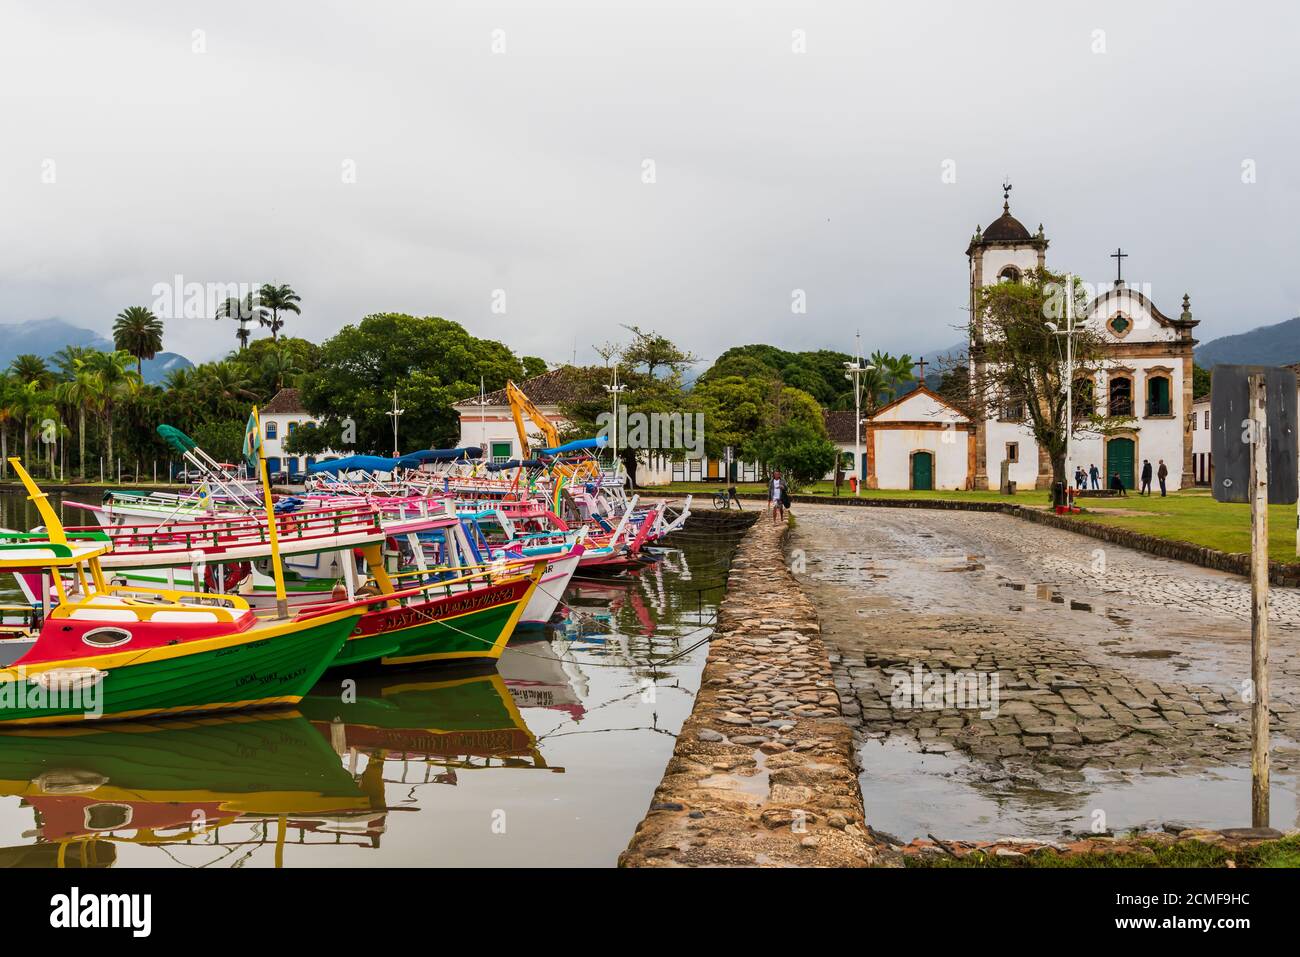 Blick auf den Yachthafen mit den traditionellen brasilianischen Schiffen, die daneben angedockt sind Alte katholische Kirche in einer ländlichen Landschaft Stockfoto